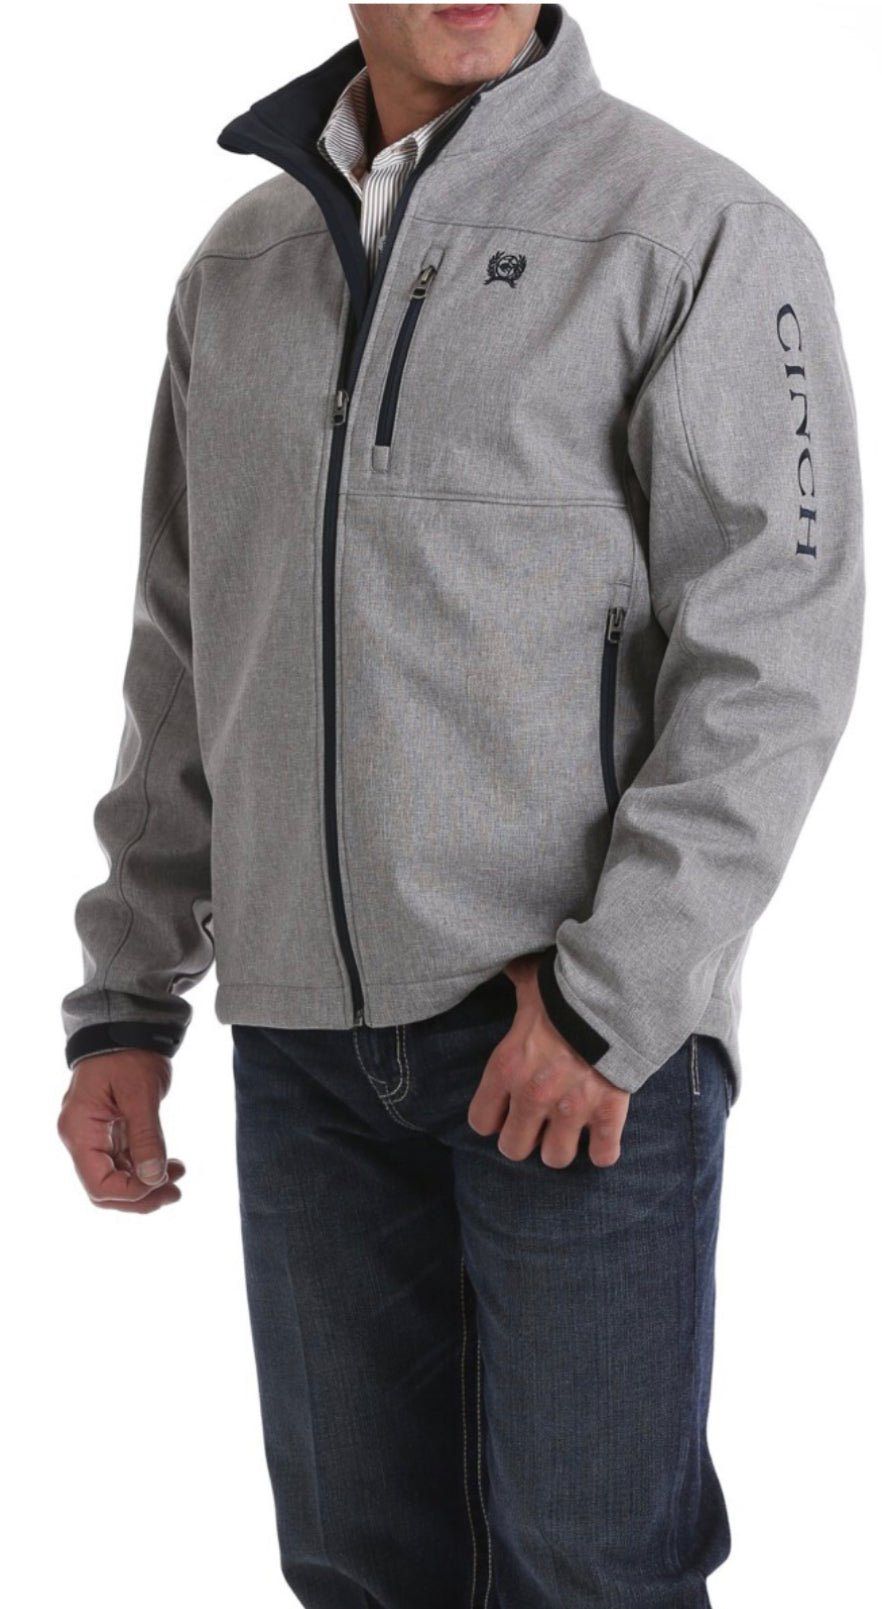 Cinch men’s bonded textured jacket - Grey / navy